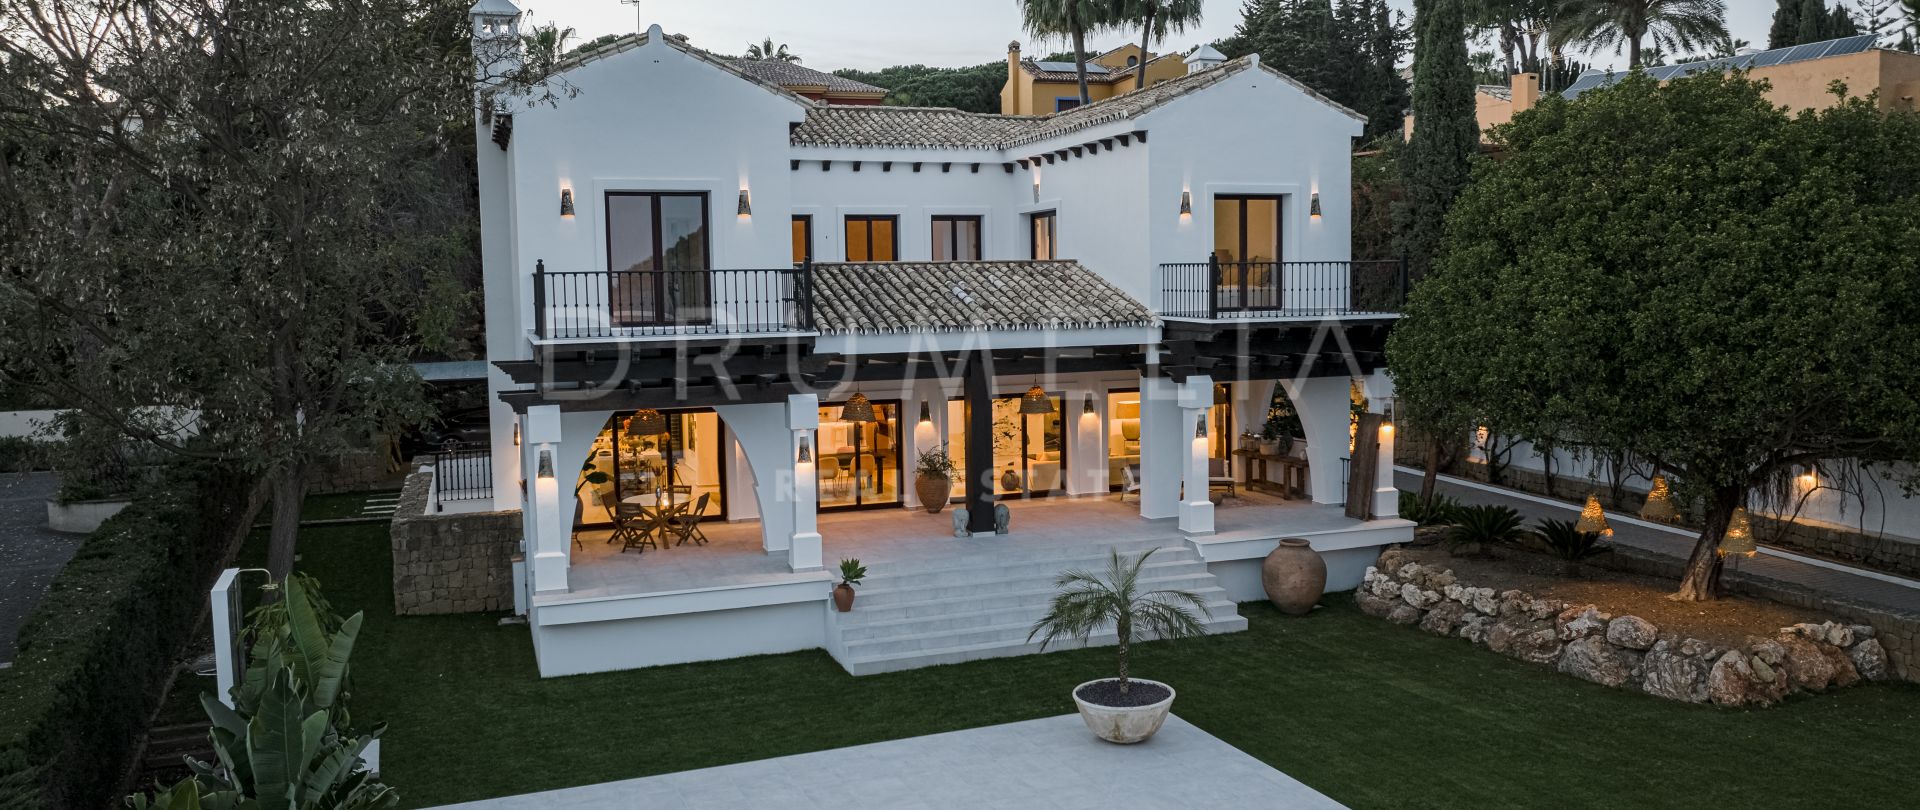 Villa for salg i Hacienda las Chapas, Marbella Øst